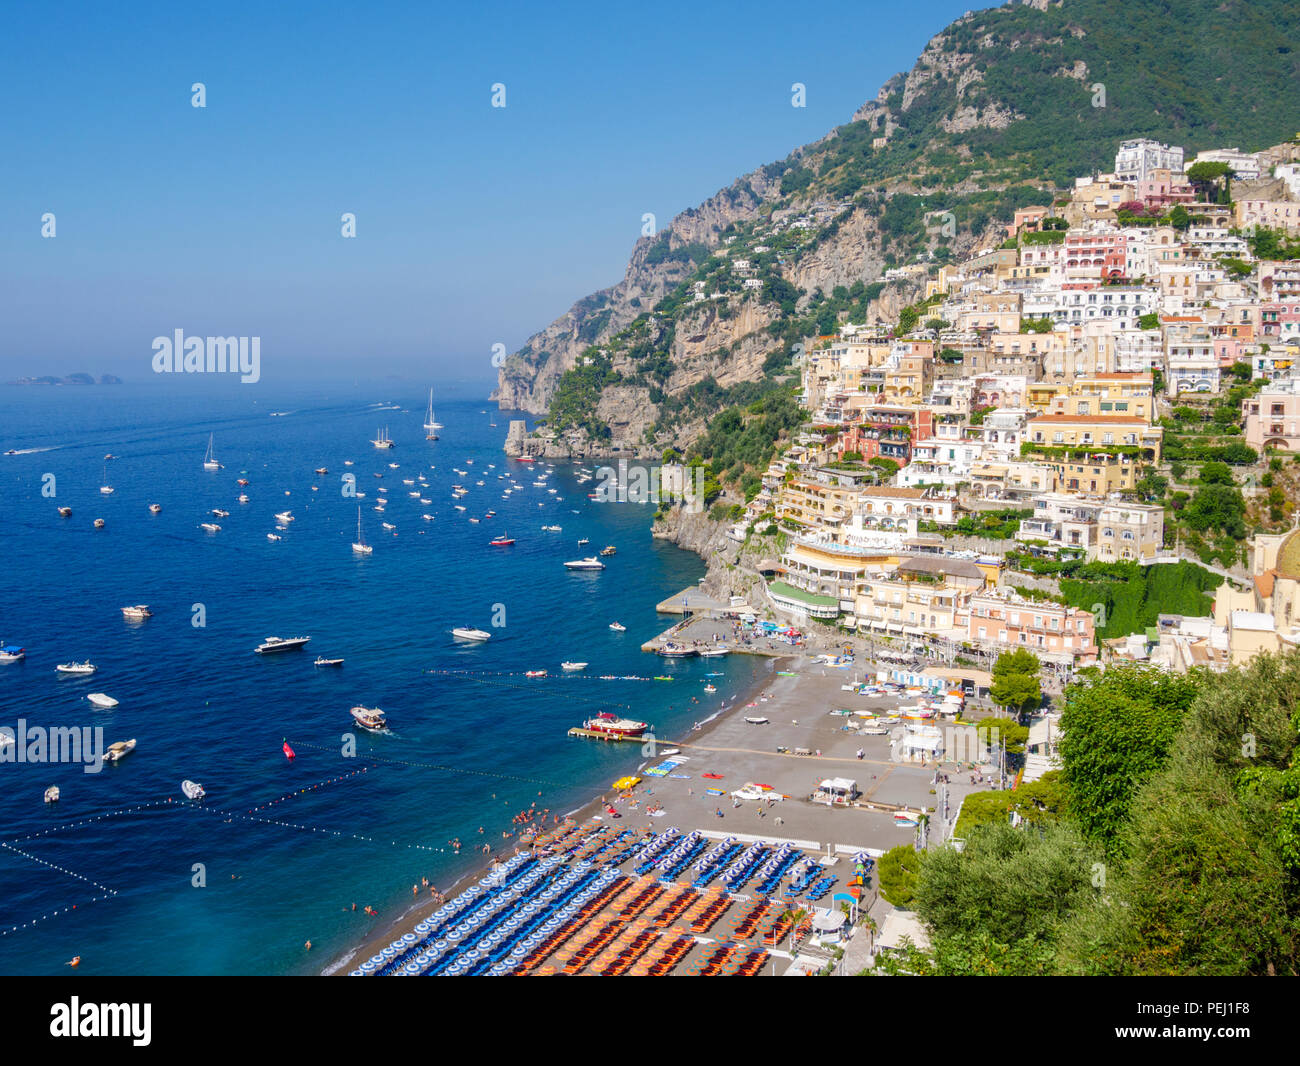 View down to Positano, Italy Stock Photo